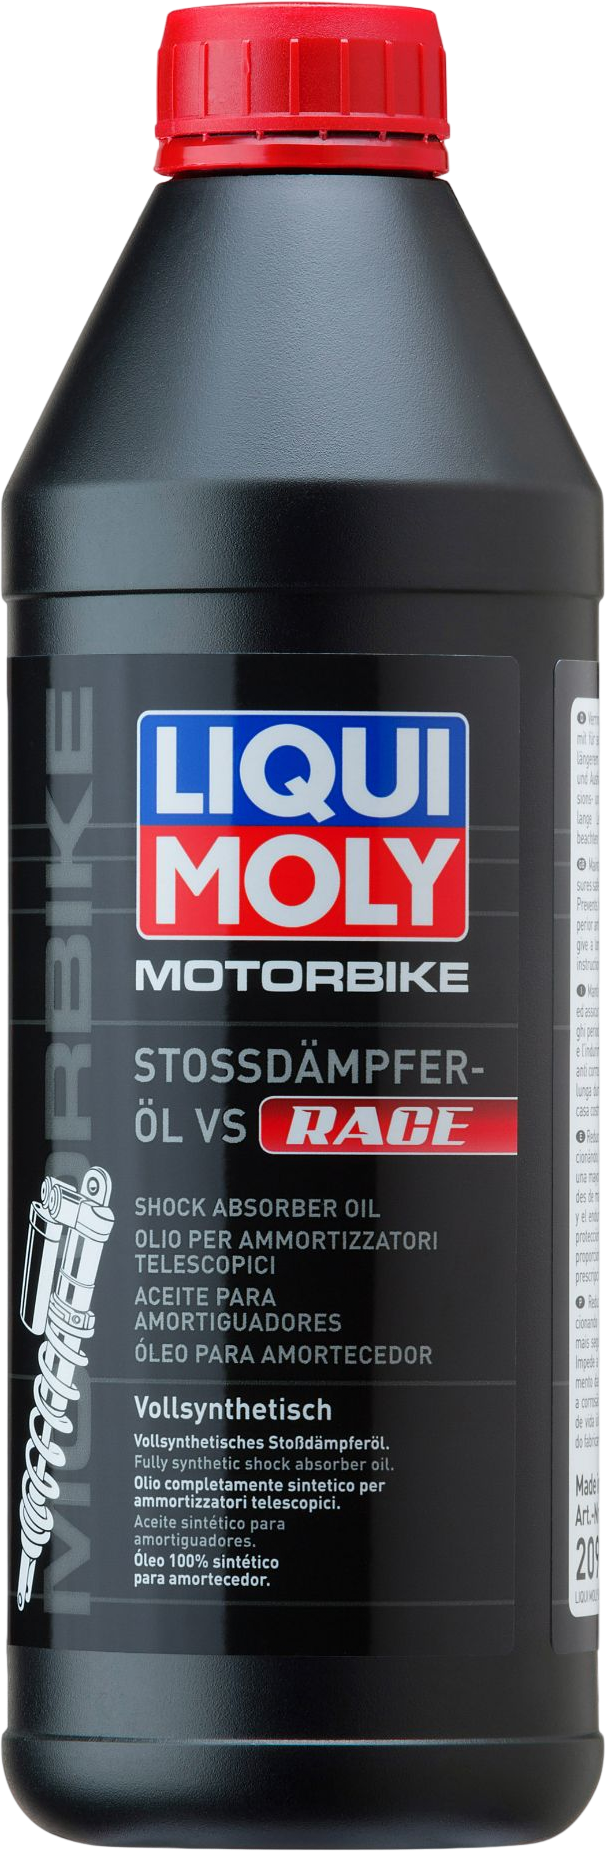 LM20972-1 Universeel toepasbaar in schokdempers van motorfietsen, bromfietsen en andere tweewielers in de race-sector.